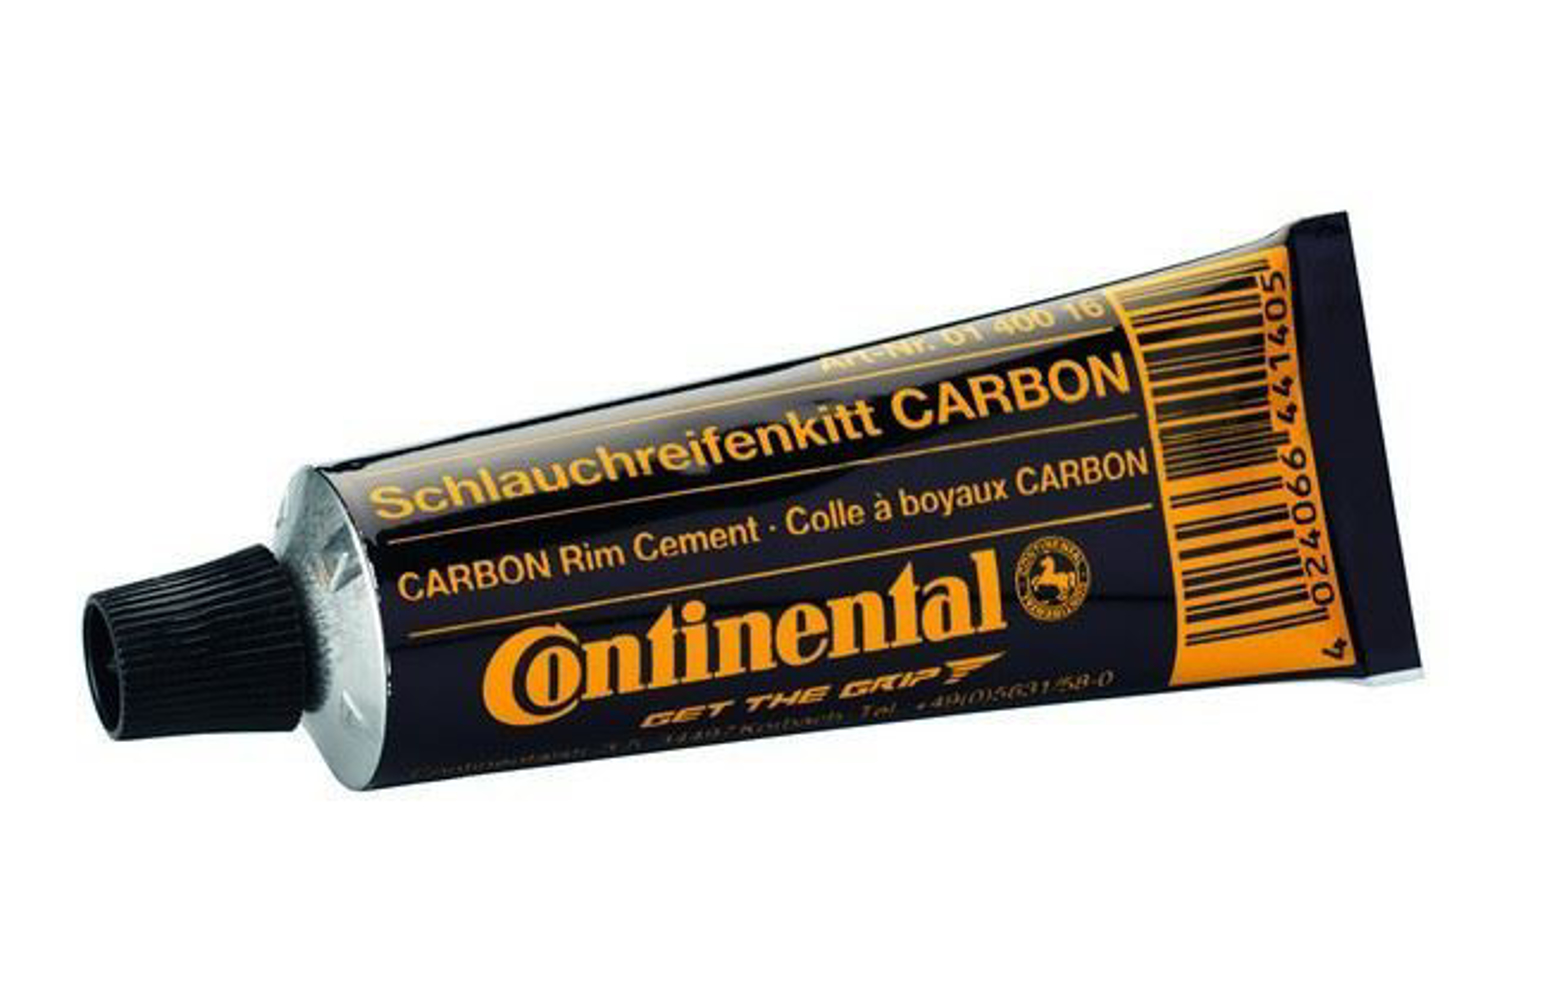 Imagem de Tubo cola boion Continental (25 g) p/ carbono